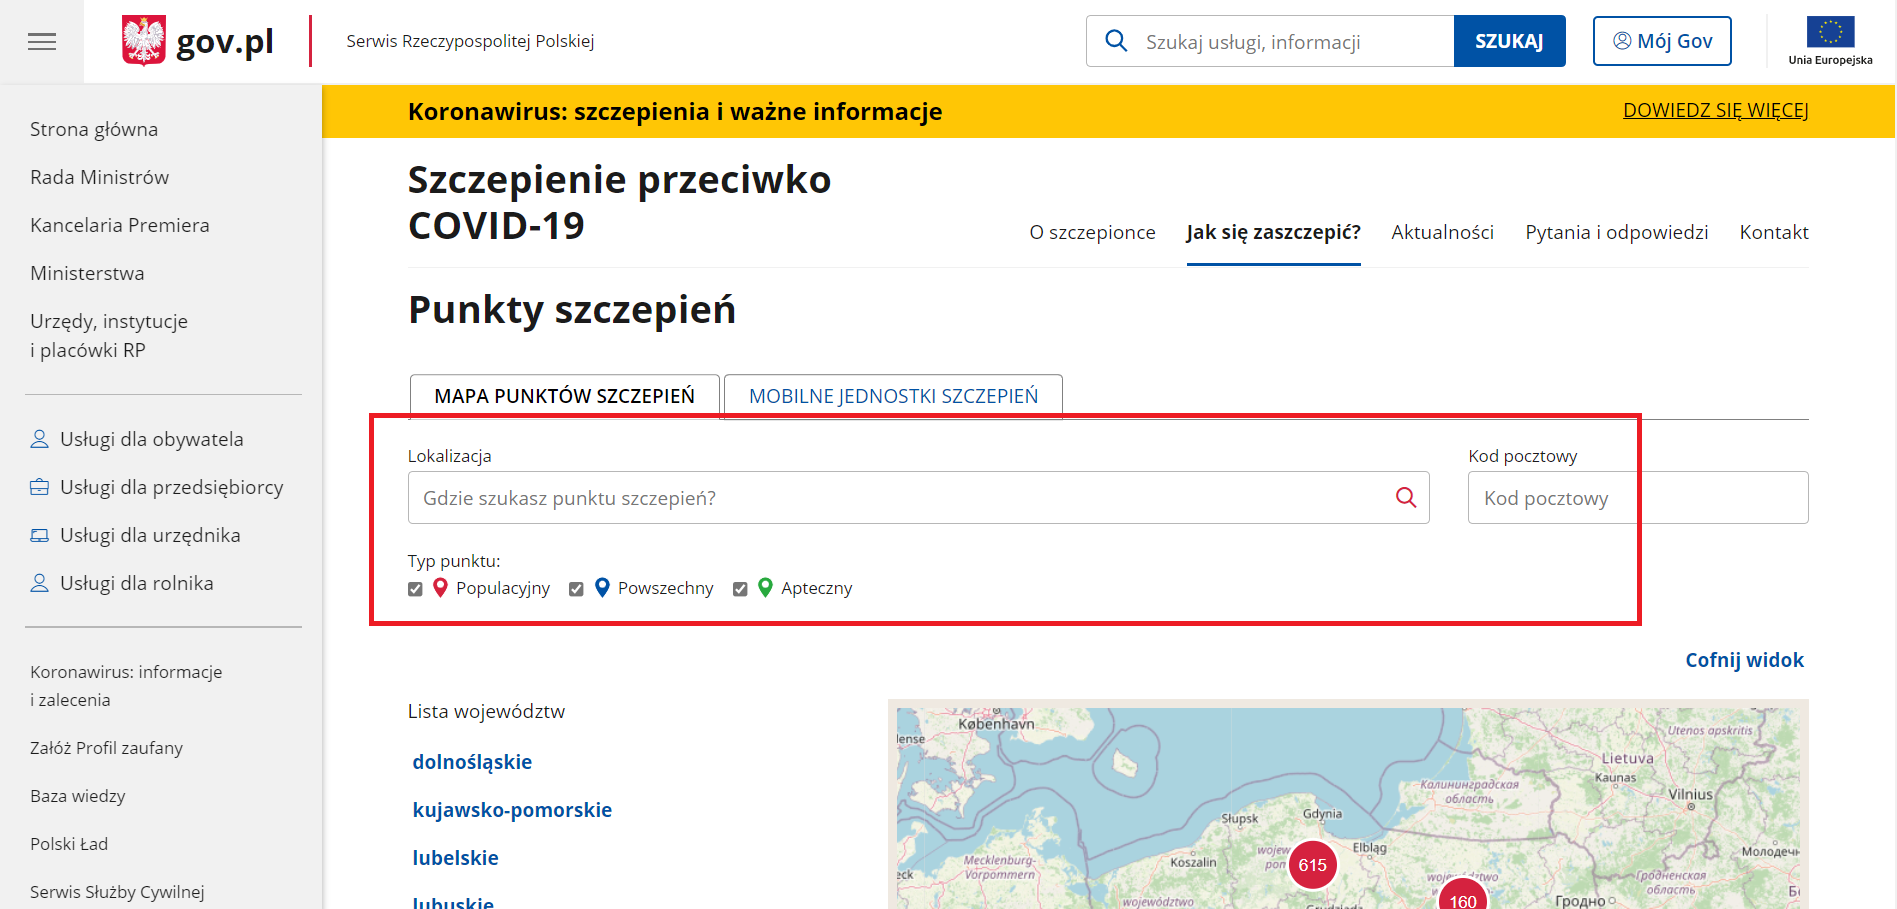 Скріншот карти пунктів вакцинації на сайті gov.pl